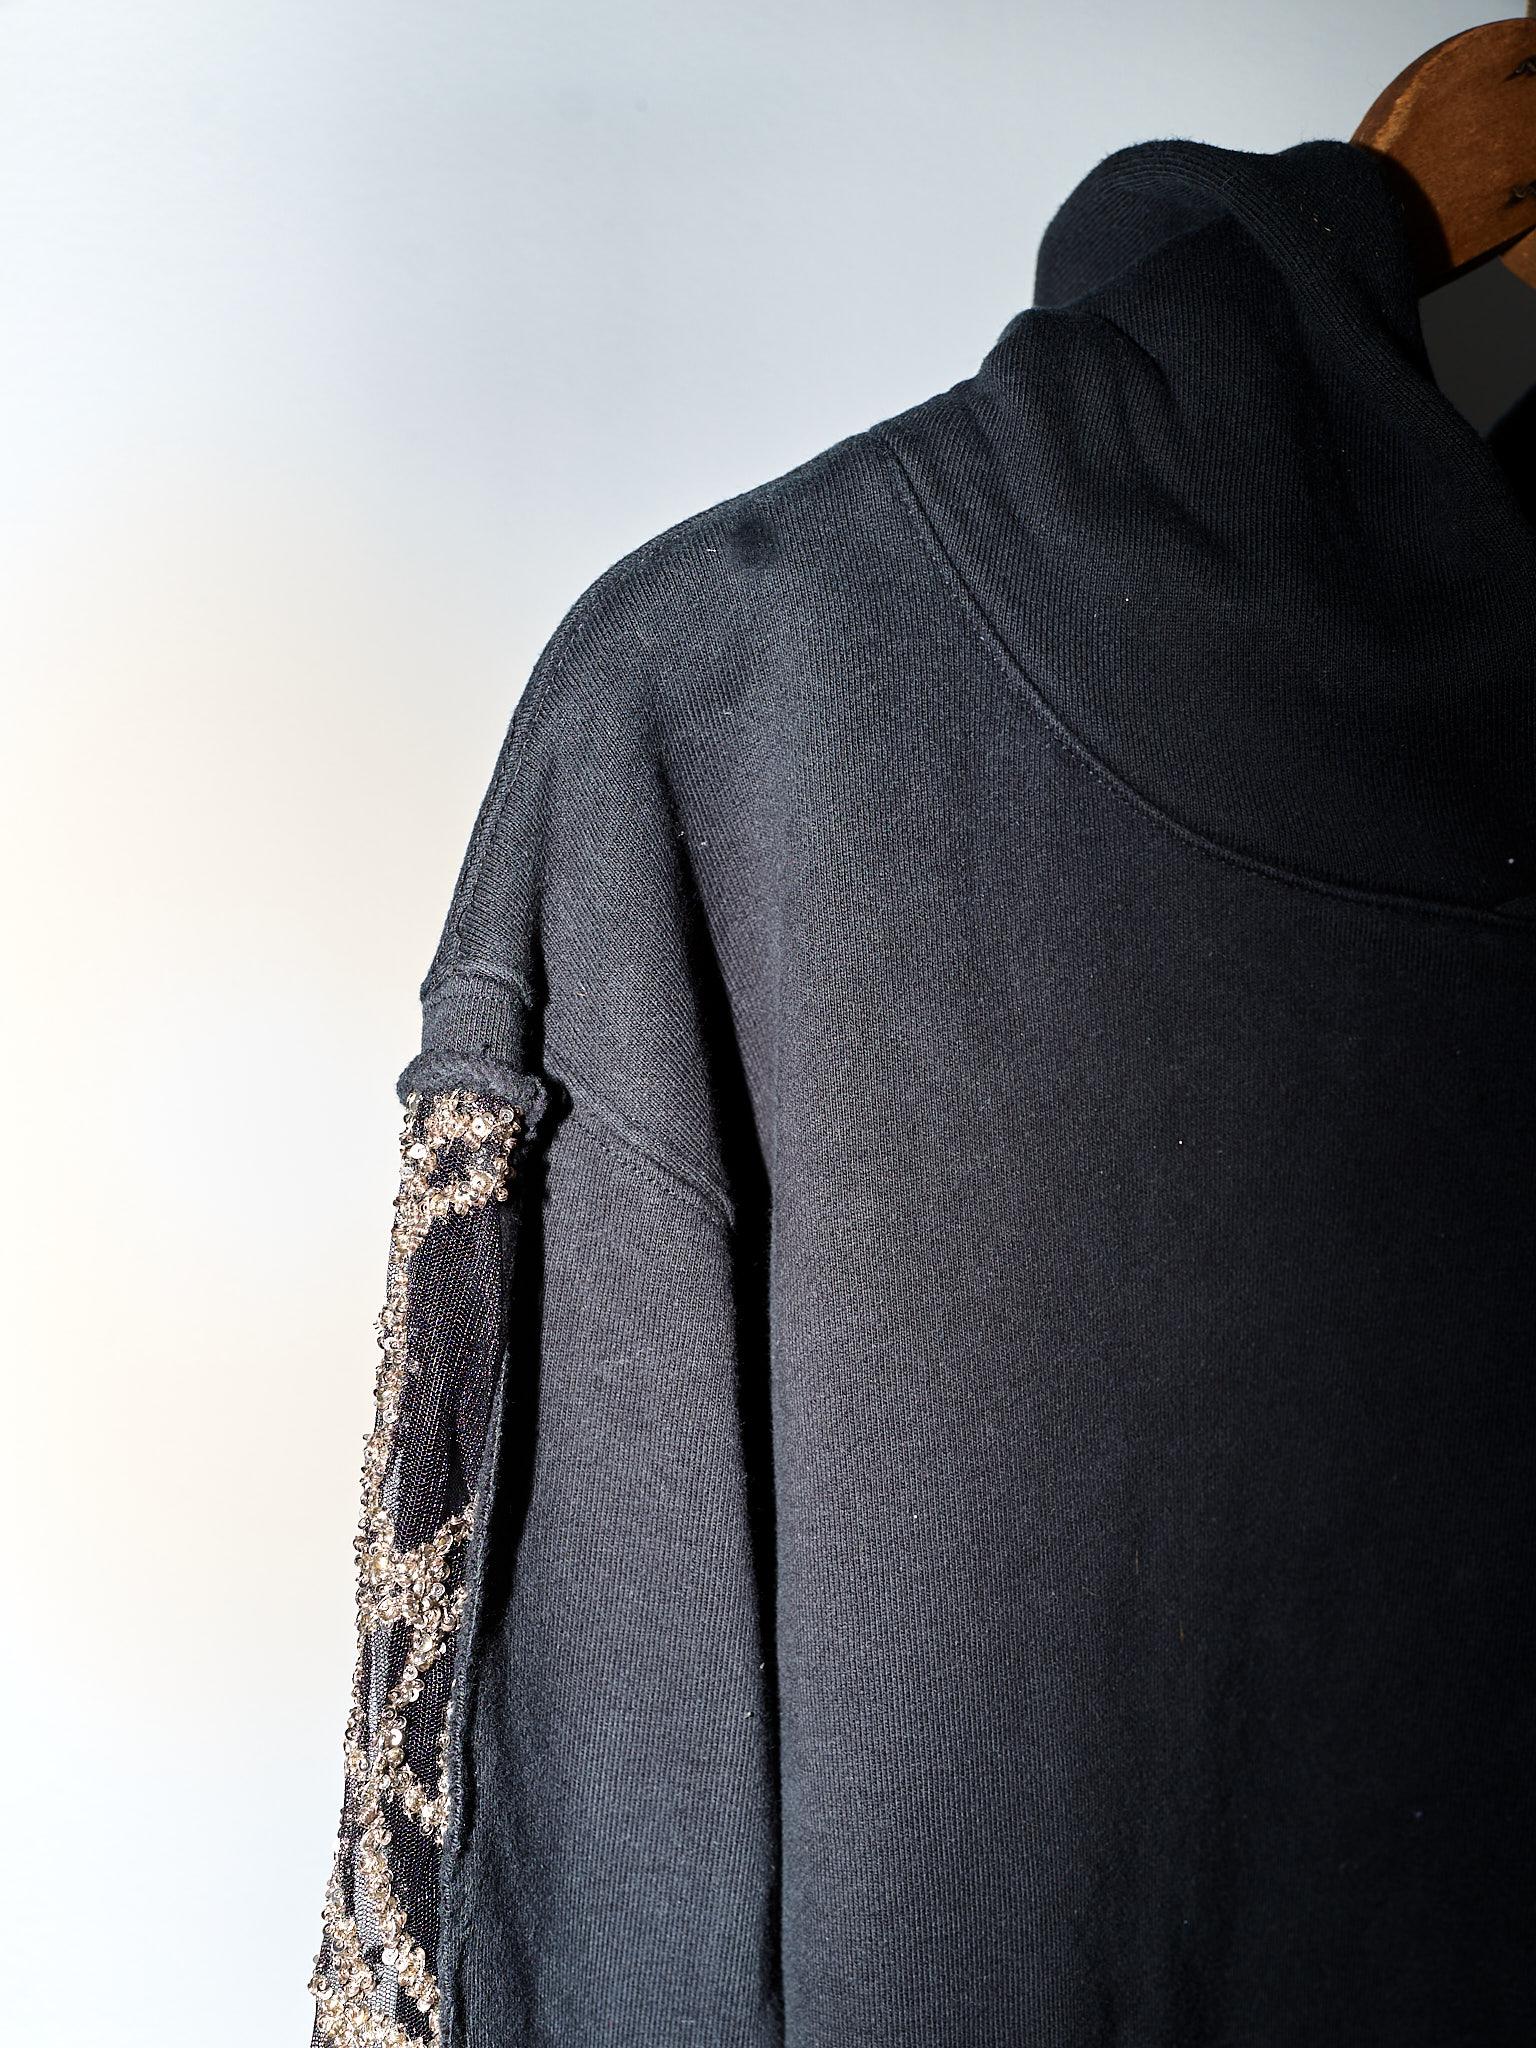 Black Hoodie Sweatshirt Transparent Sheer Mesh Chrystal Embroidery J Dauphin For Sale 2